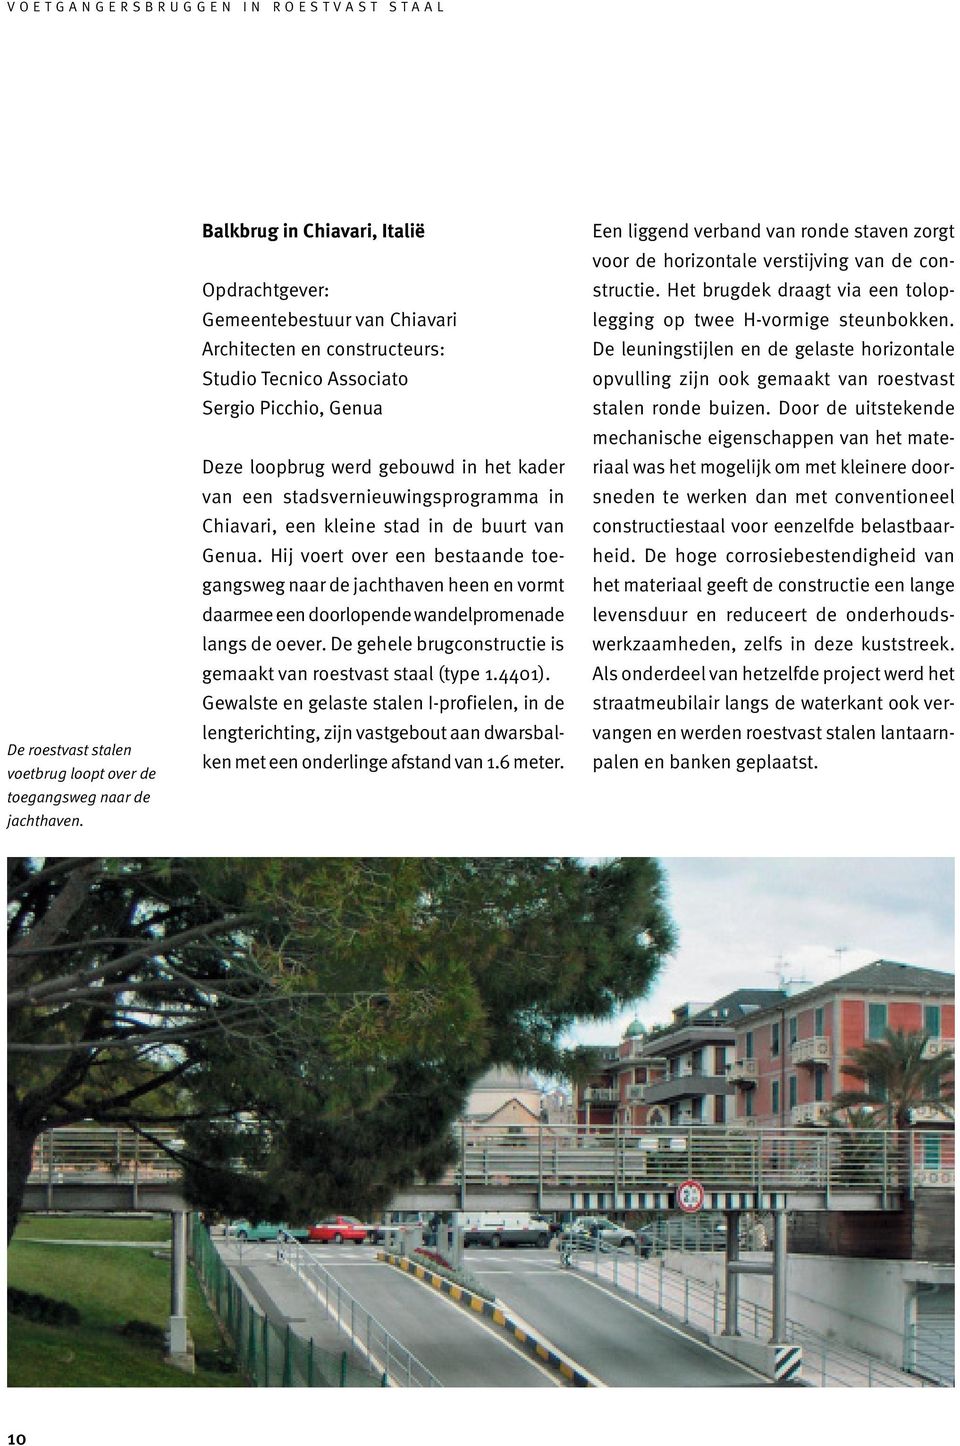 stadsvernieuwingsprogramma in Chiavari, een kleine stad in de buurt van Genua.